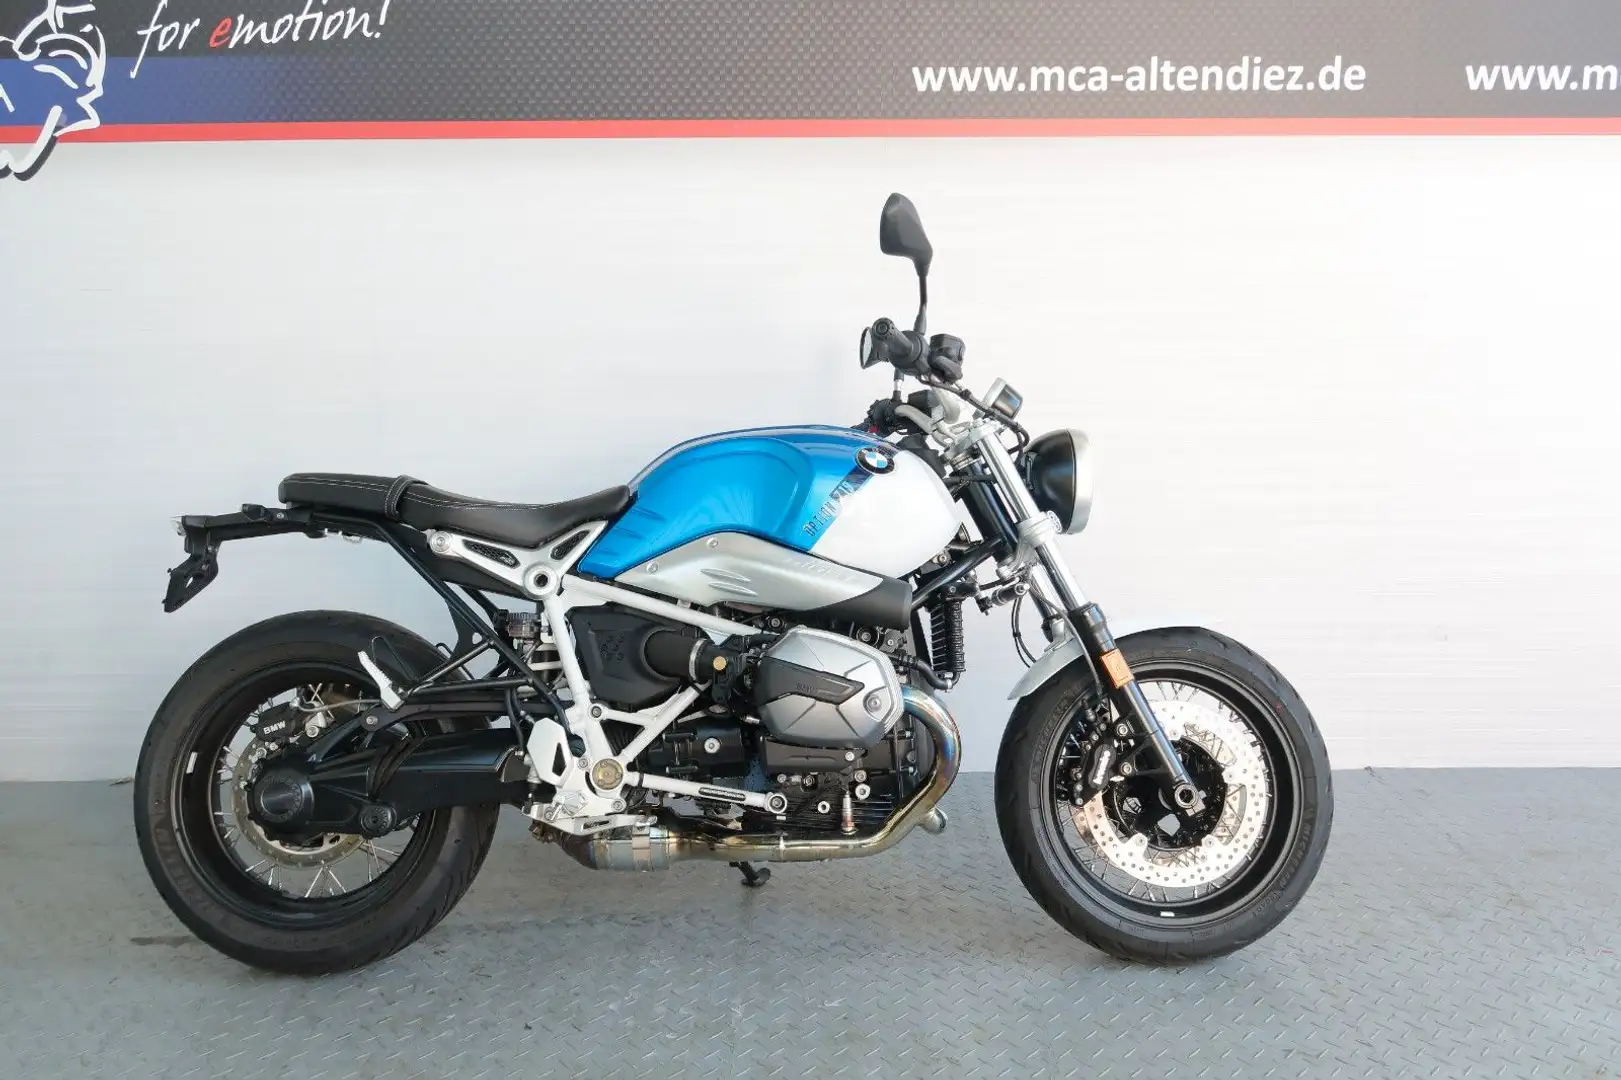 BMW R nineT Naked Bike in Blau gebraucht in Altendiez für € 12.490,-